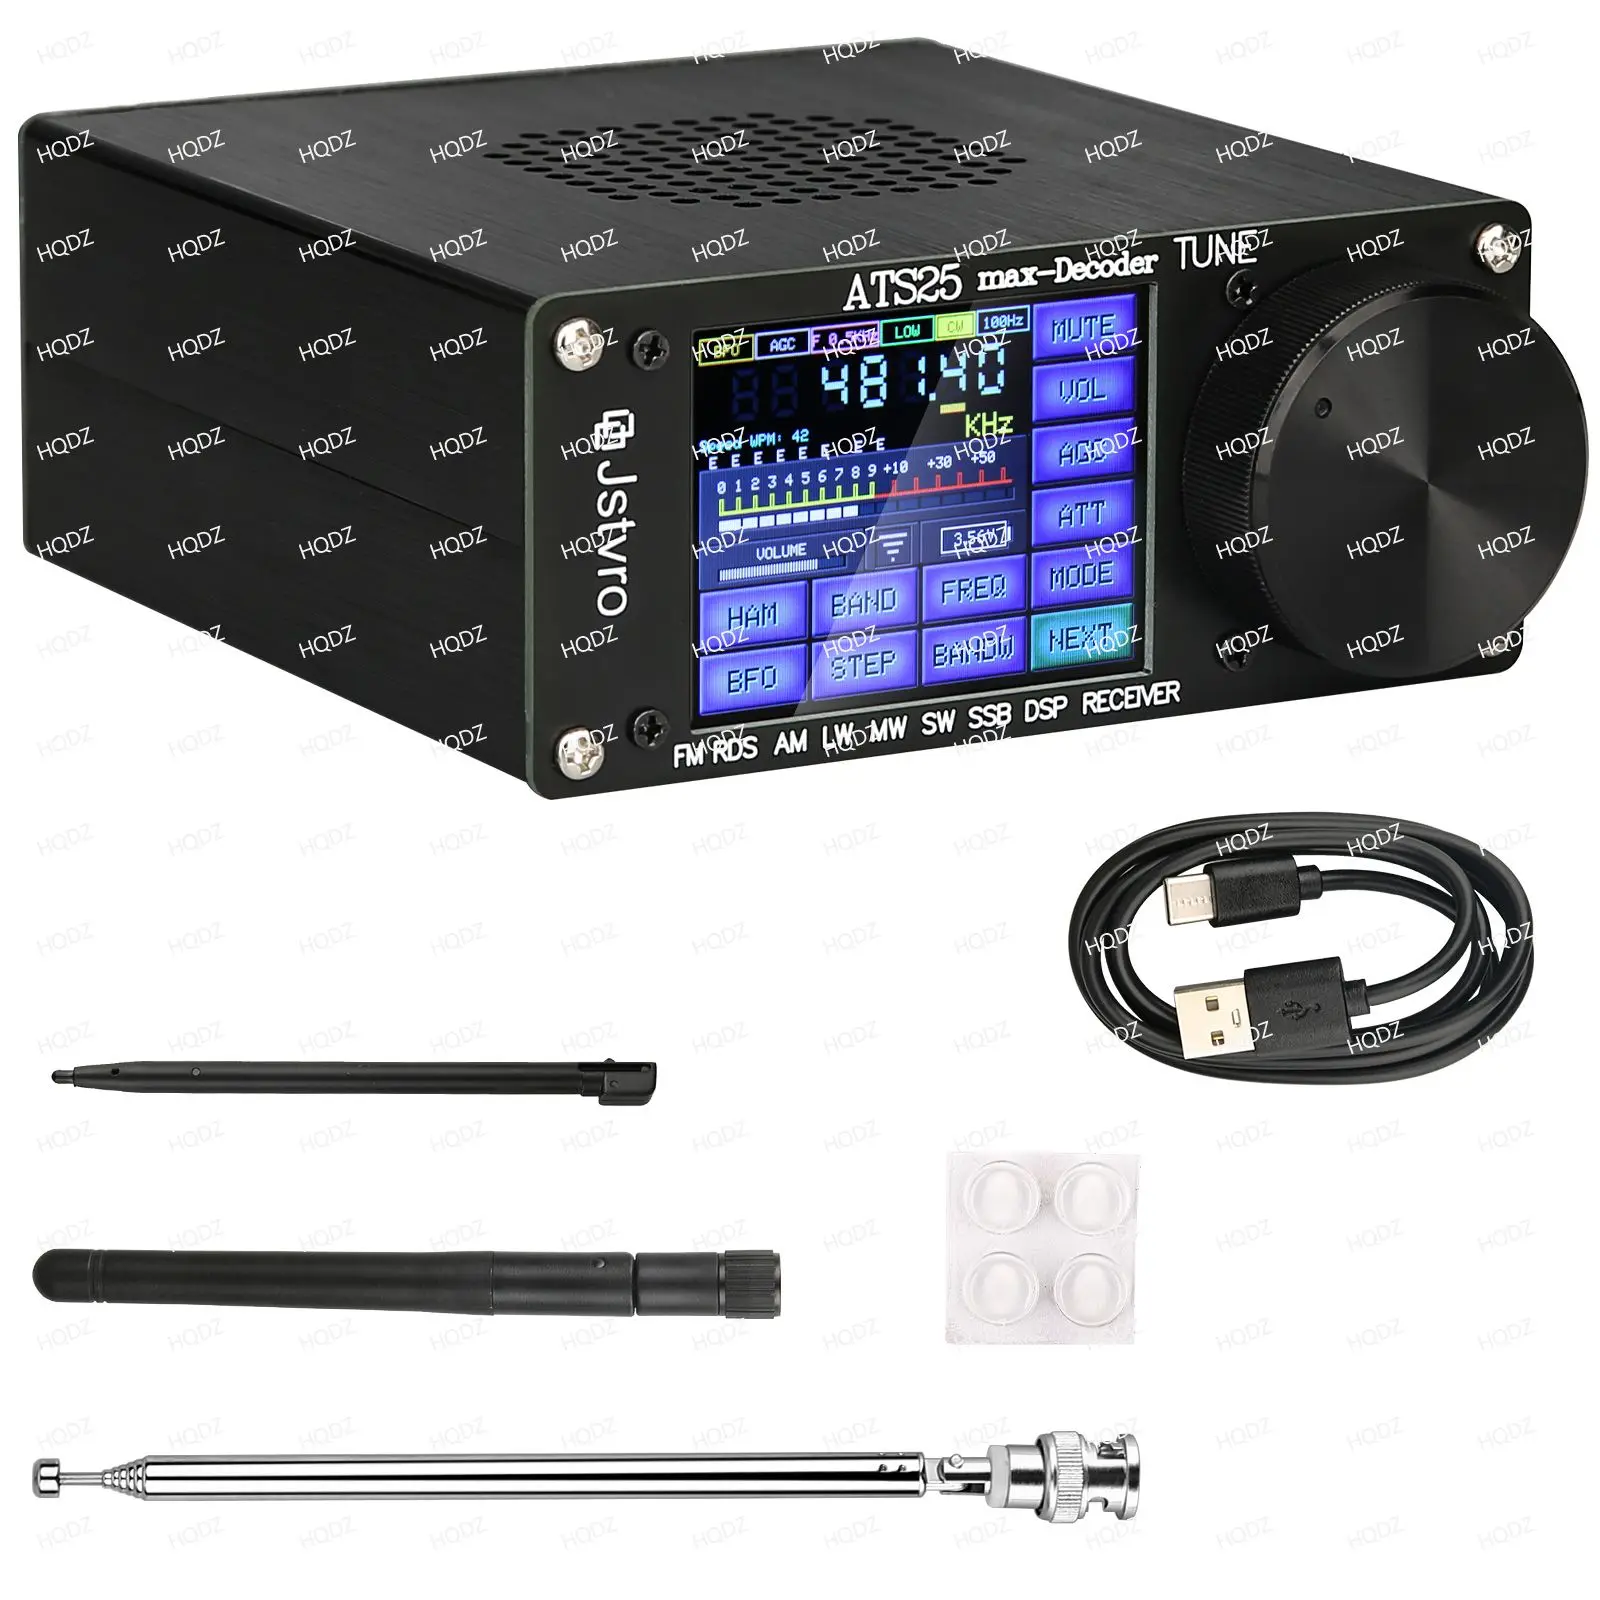 

Полнодиапазонный радиоприемник ATS25 Max Si4732, FM RDS AM LW MW SW SSB, официальный код активации